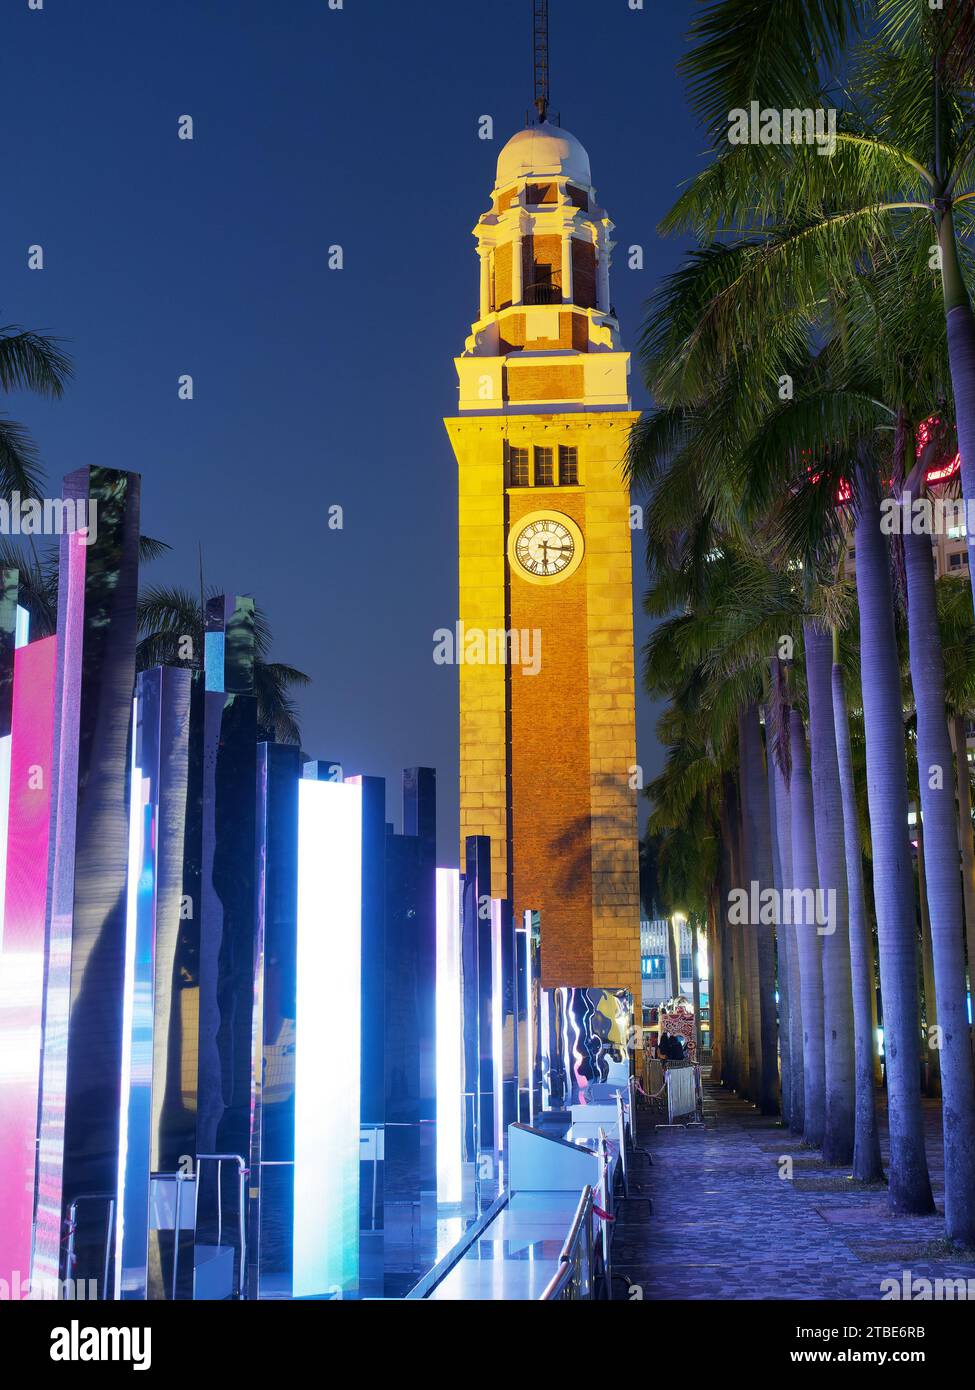 Regardant la vieille tour de l'horloge de la gare de Kowloon à Hong Kong la nuit avec un affichage lumineux coloré Banque D'Images